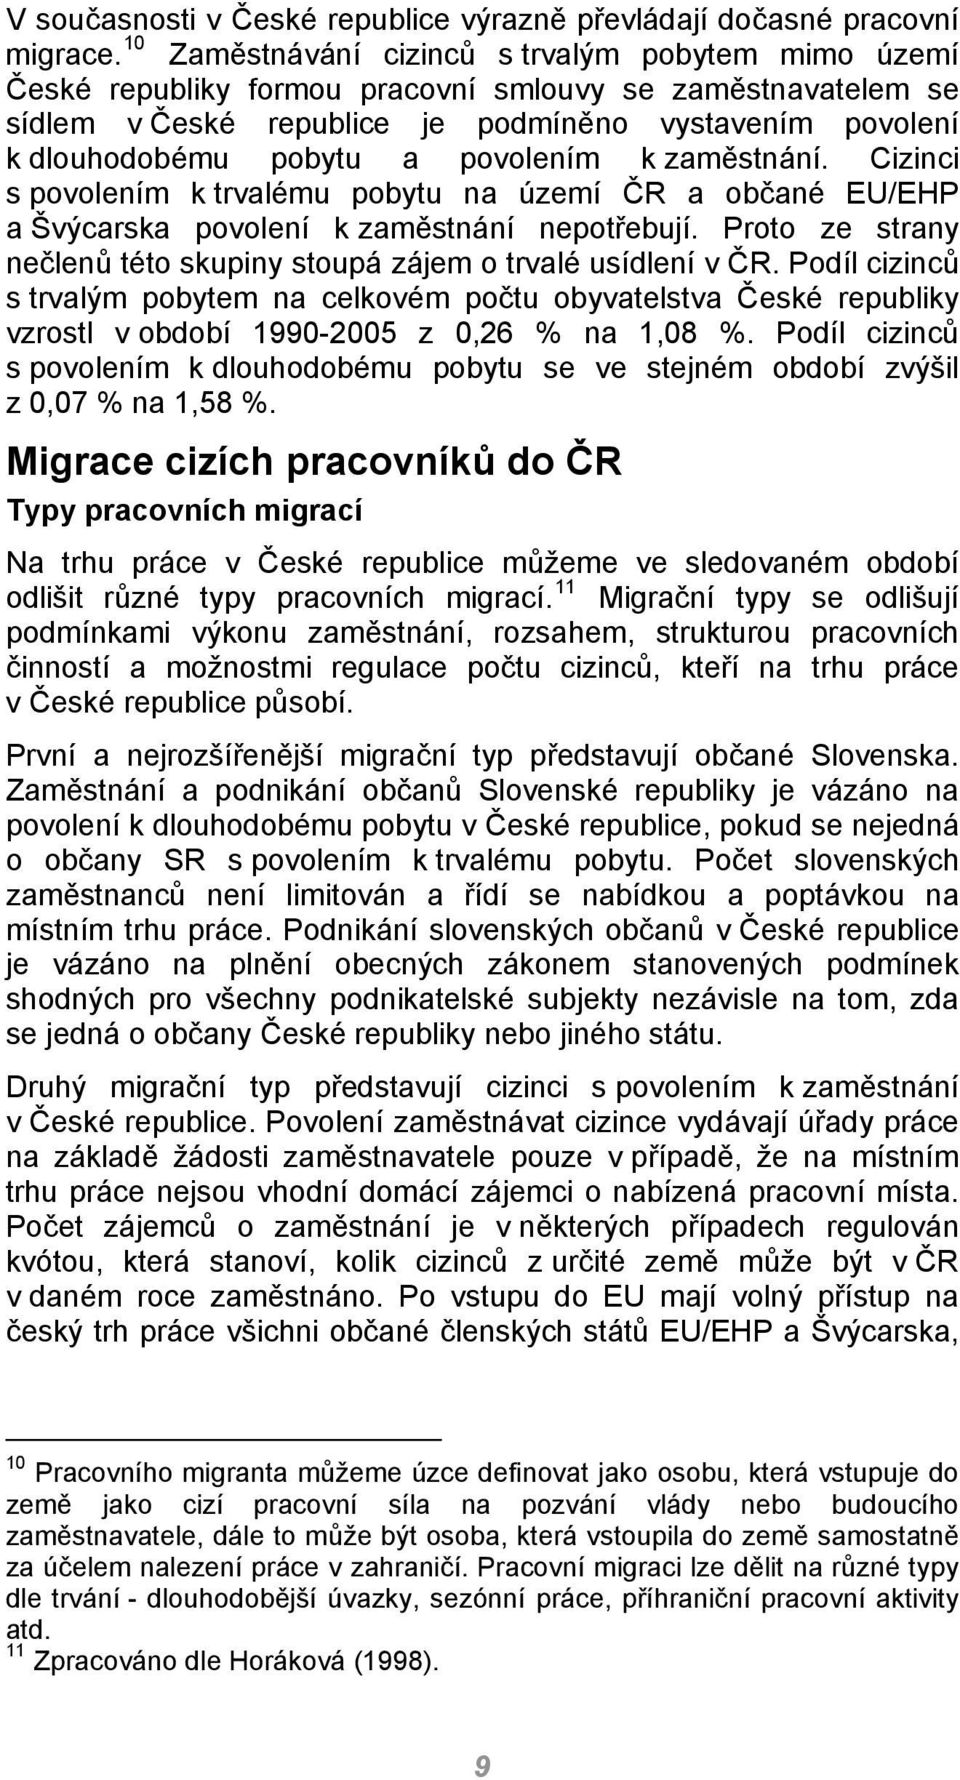 povolením k zaměstnání. Cizinci s povolením k trvalému pobytu na území ČR a občané EU/EHP a Švýcarska povolení k zaměstnání nepotřebují.